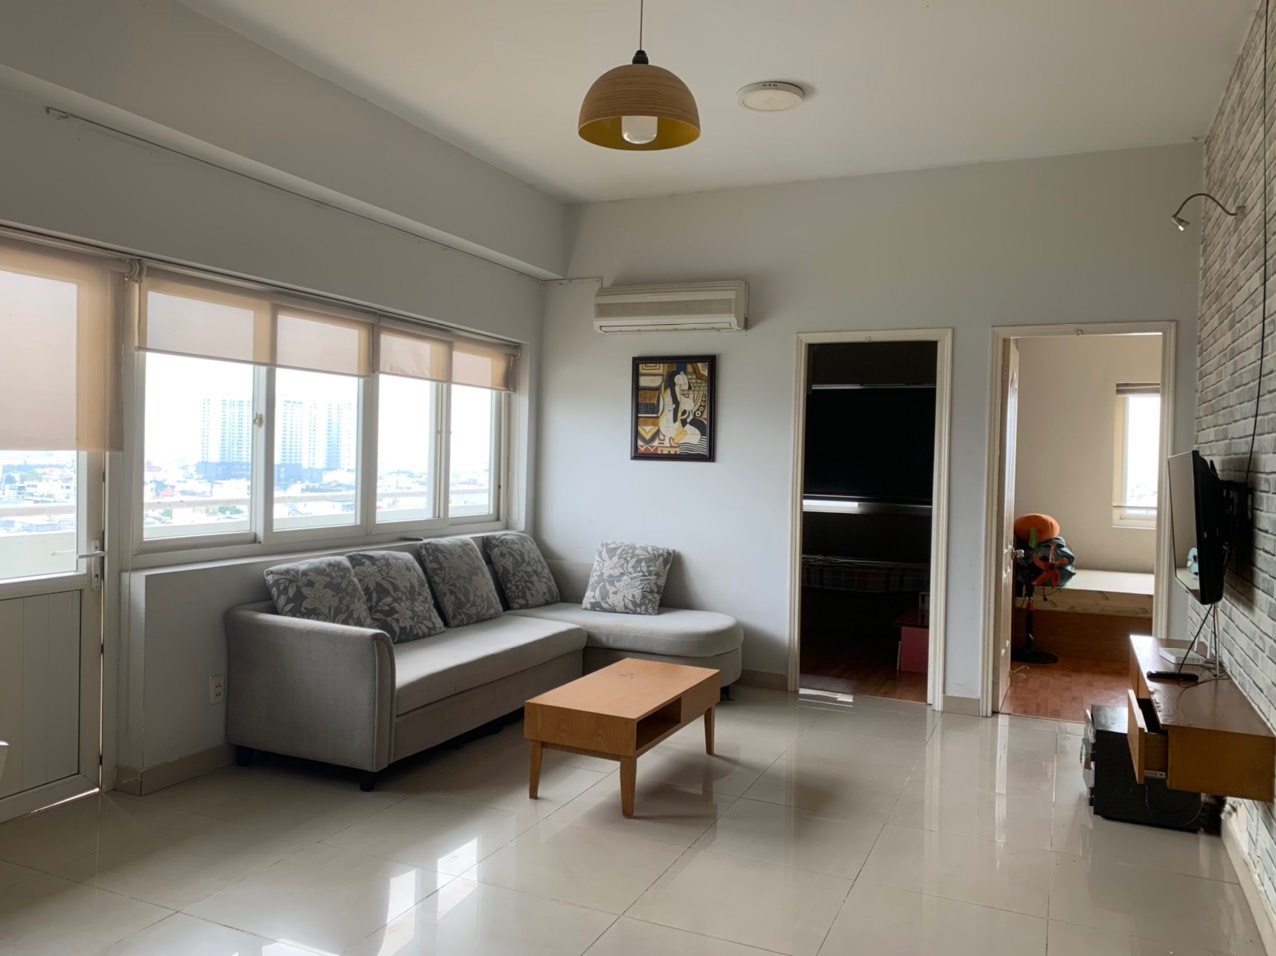 Chuyên cho thuê căn hộ Minh Thành Quận 7 nhà trống 9tr/tháng,Full nội thất từ 10tr/tháng .LH 0909802822 Trân